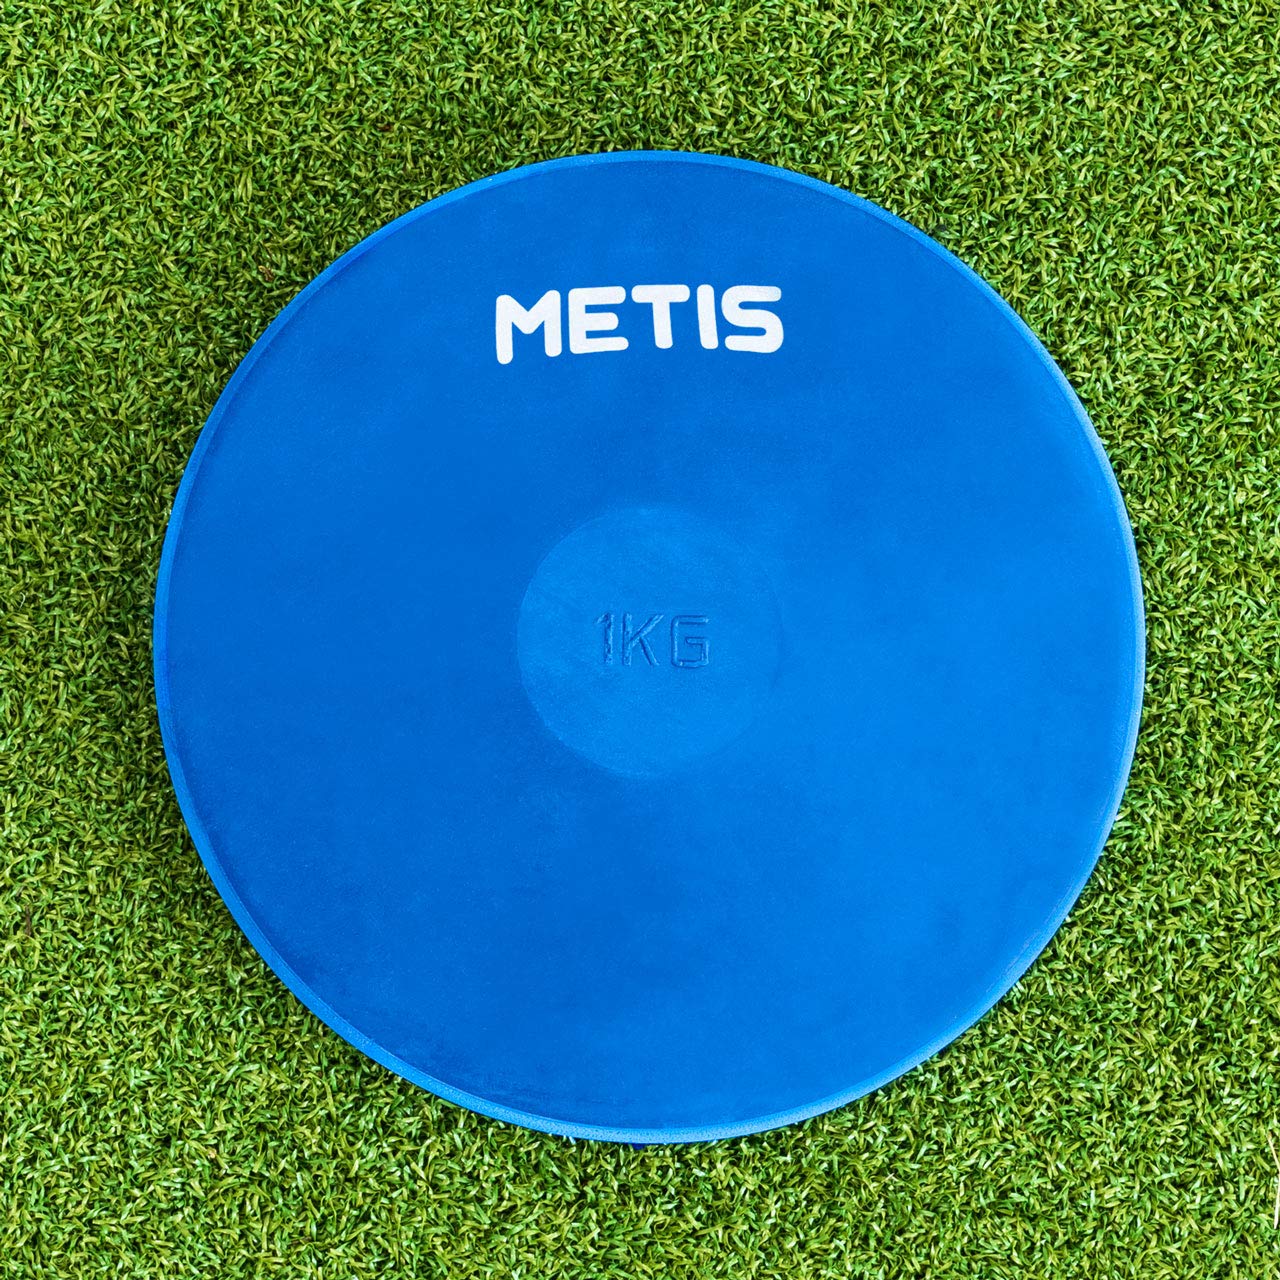 METIS Indoor/Outdoor Leichtathletik Diskus [5 Gewichte erhältlich] | Sport Gummi Diskus für Training | Gewicht Scheiben aus Gummi (Alle Gewichte, 5 x Diskus)